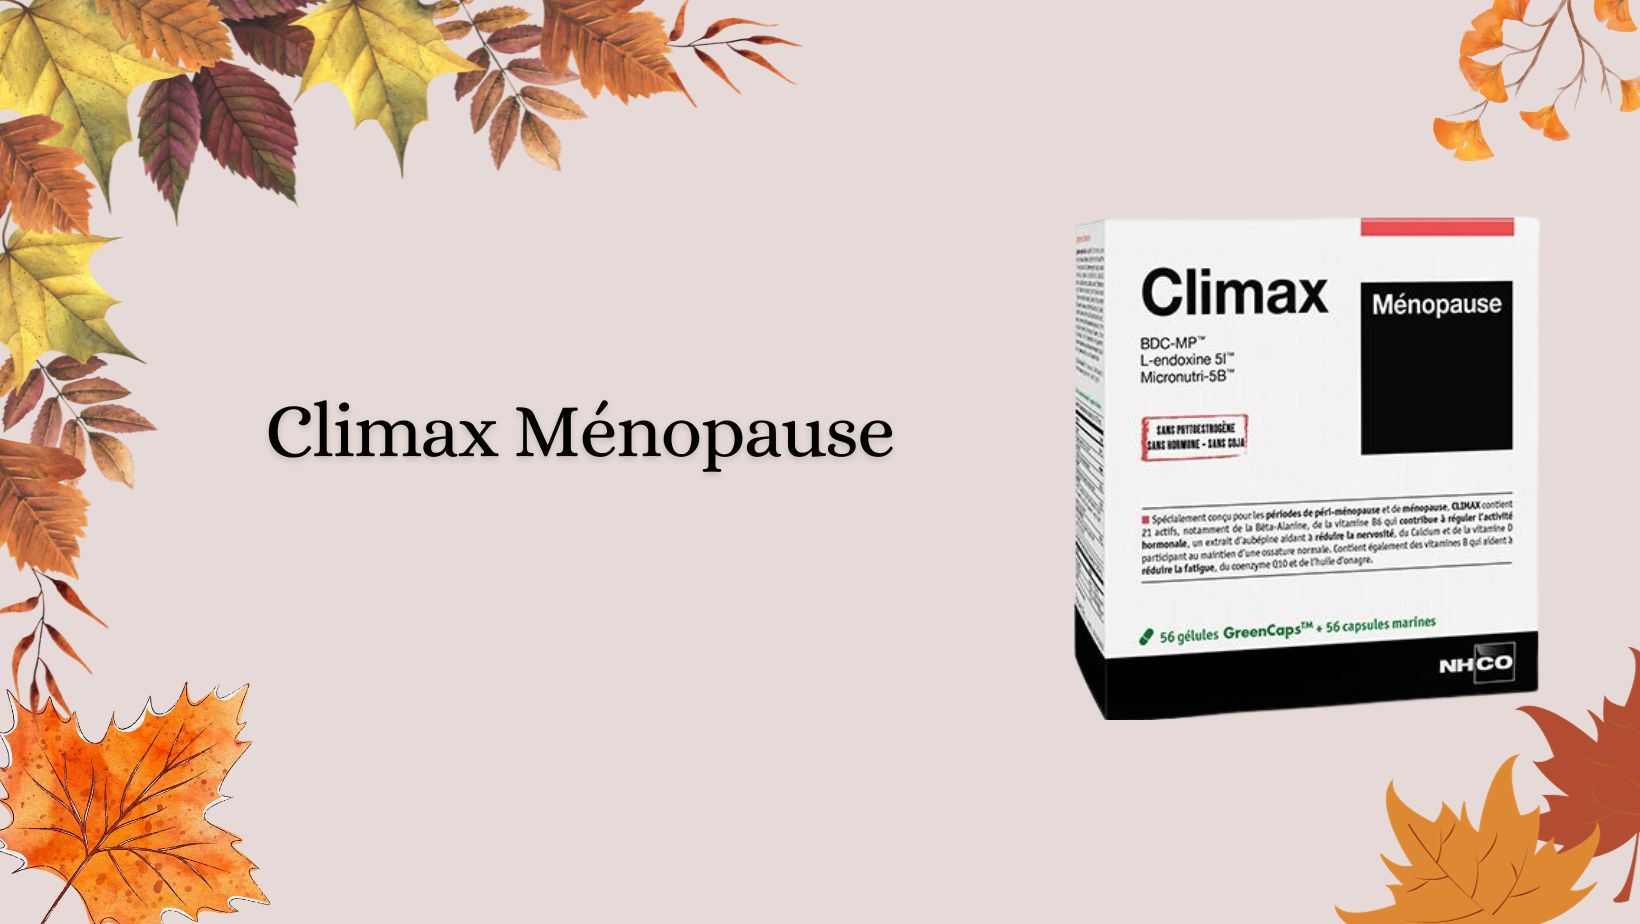 Avis médical sur Climax Ménopause pour soulager les symptomes de la ménopause